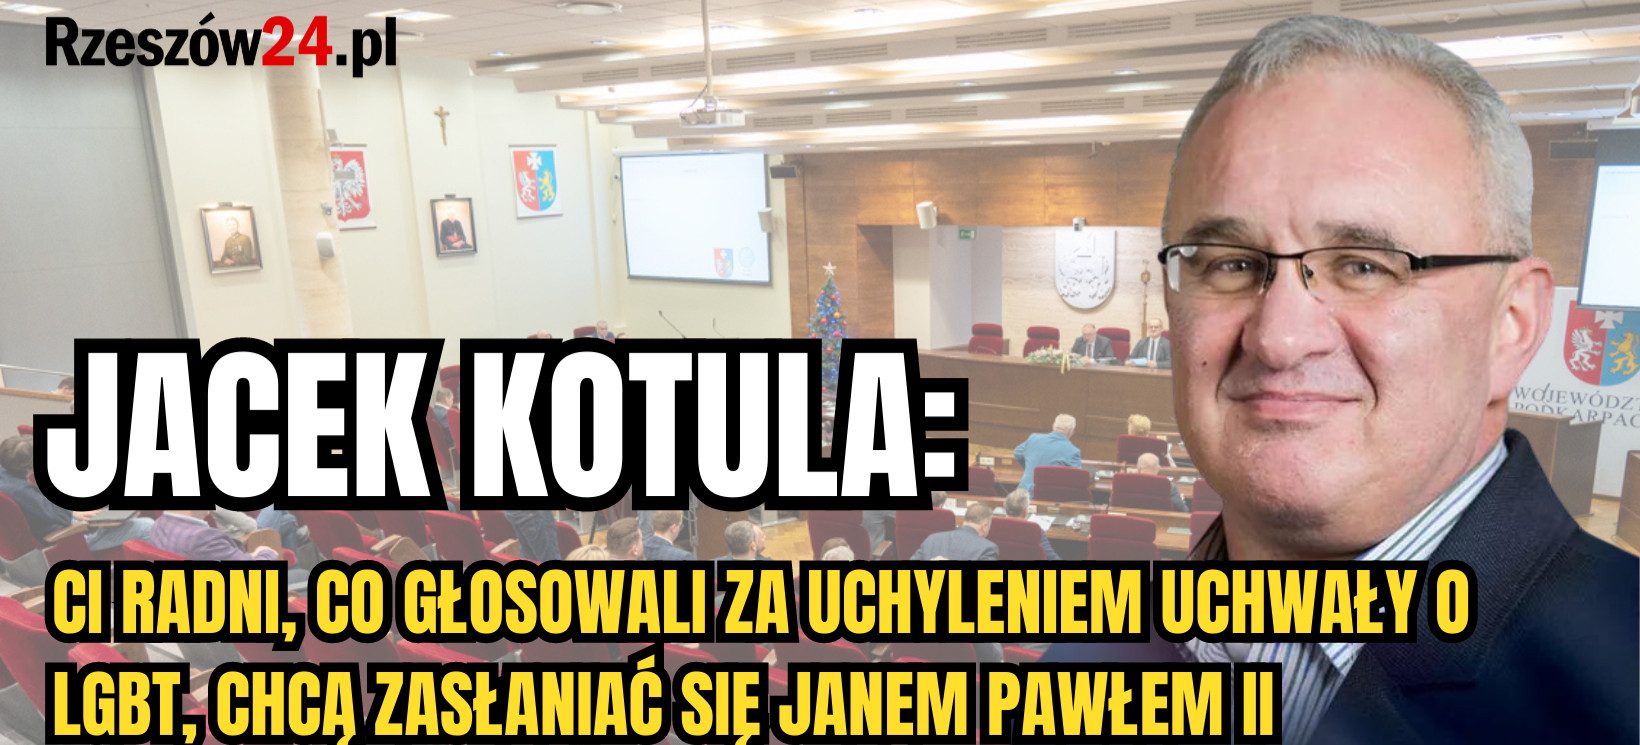 SEJMIK PODKARPACKI. Jacek Kotula: Ci radni, co głosowali za uchyleniem uchwały o LGBT, chcą zasłaniać się Janem Pawłem II